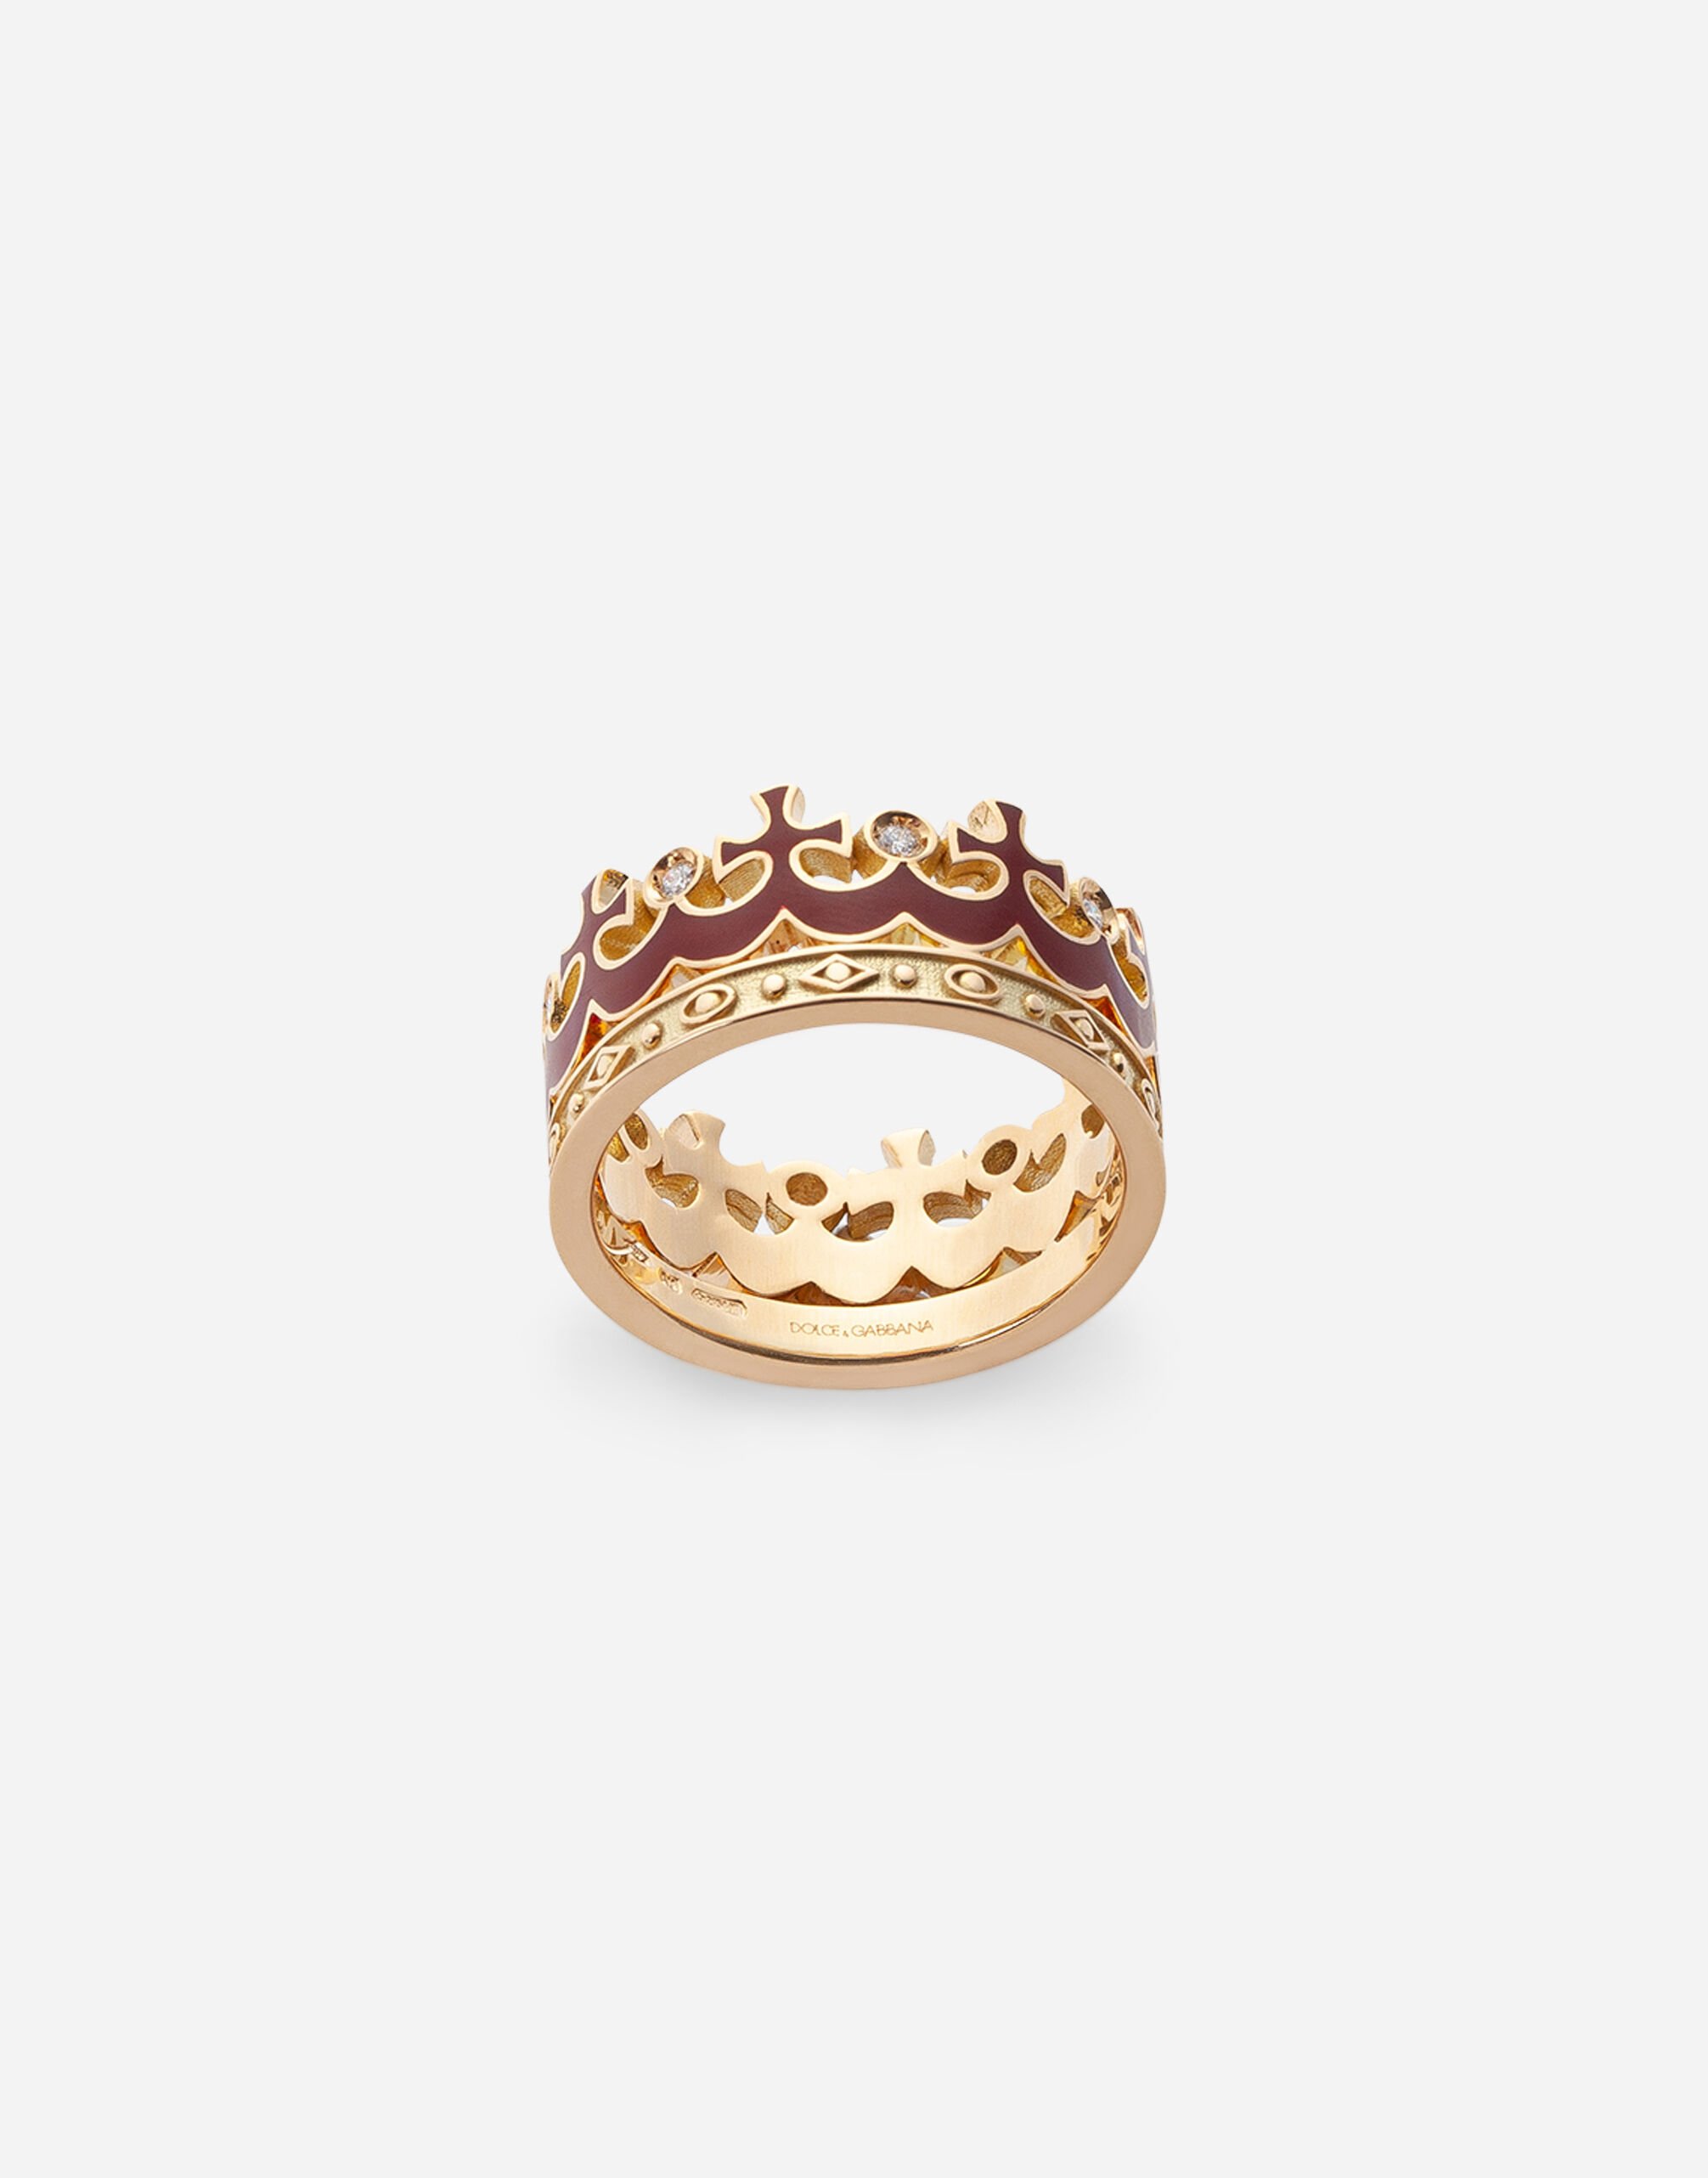 Dolce & Gabbana Кольцо Crown в форме короны с эмалью бургундского цвета и бриллиантами ЗОЛОТОЙ WRLK1GWIE01